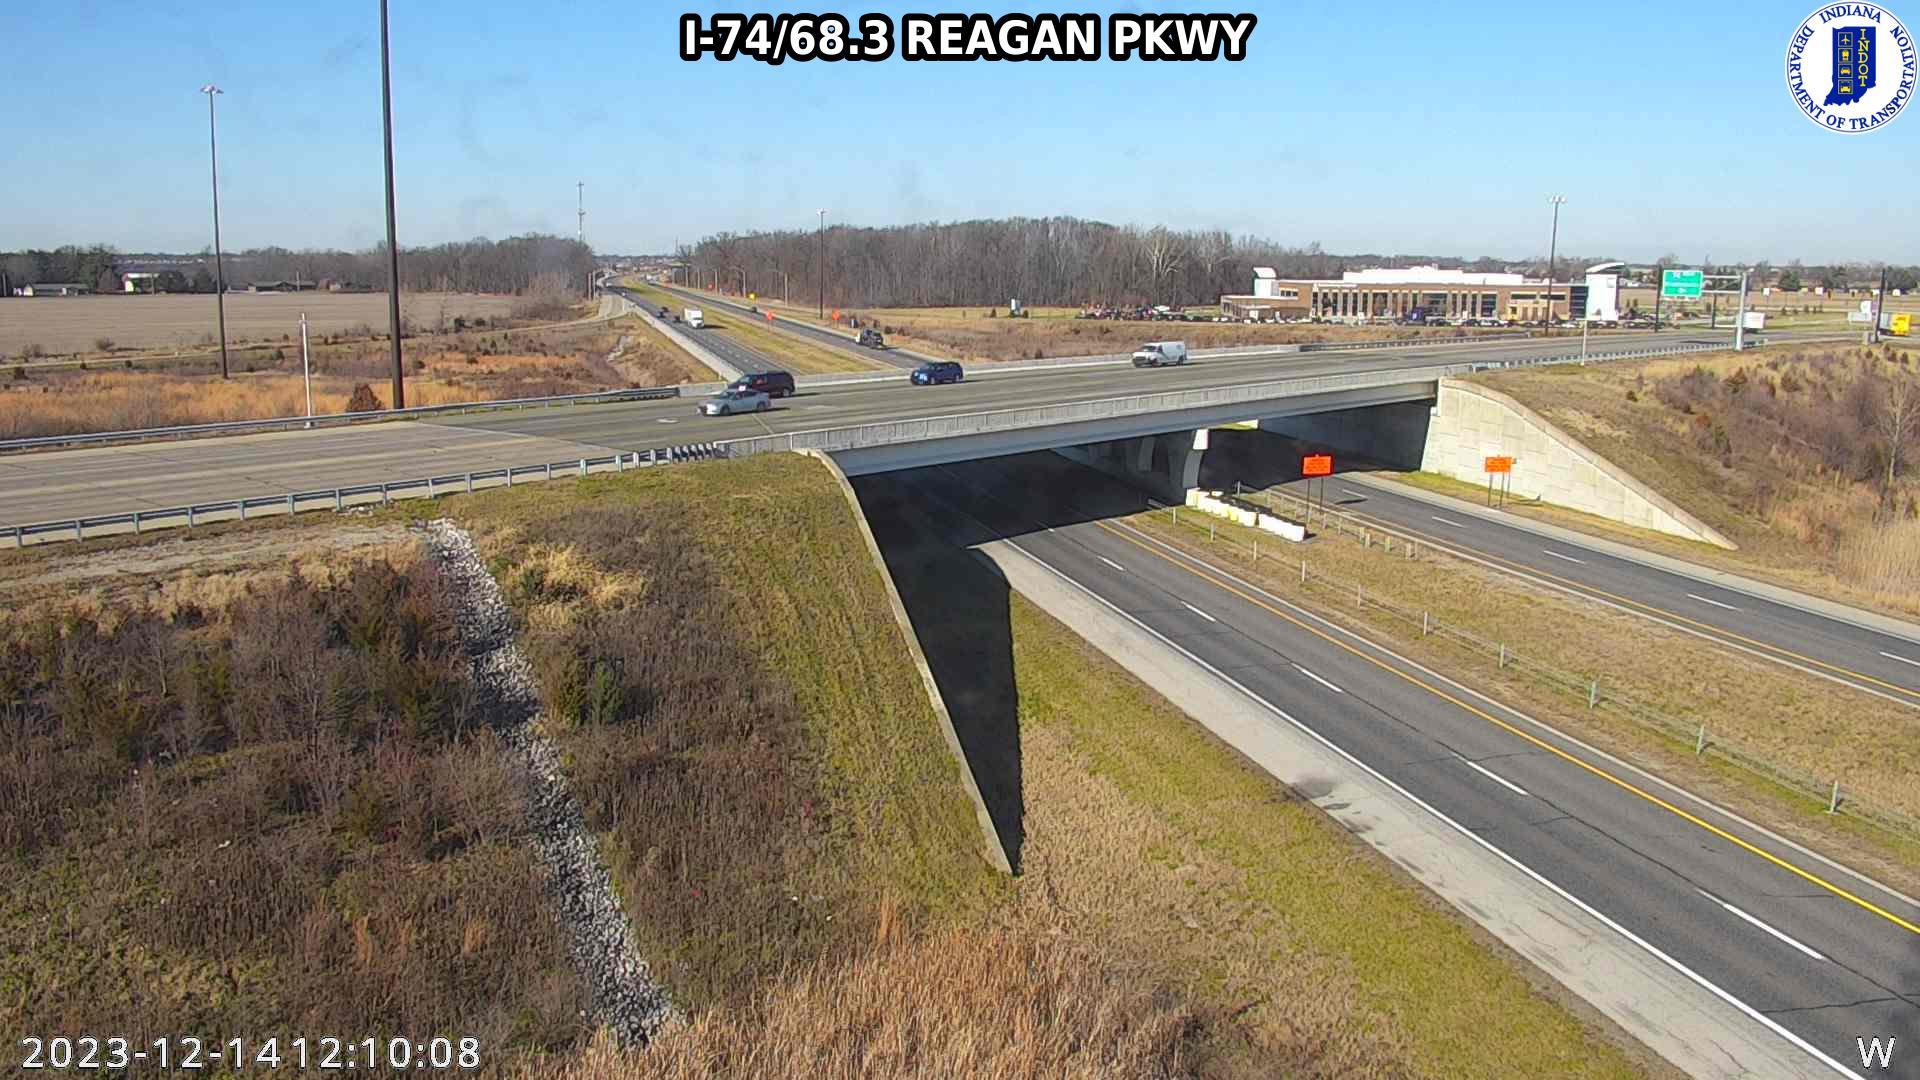 Traffic Cam Brownsburg: I-74: I-74/68.3 REAGAN PKWY Player